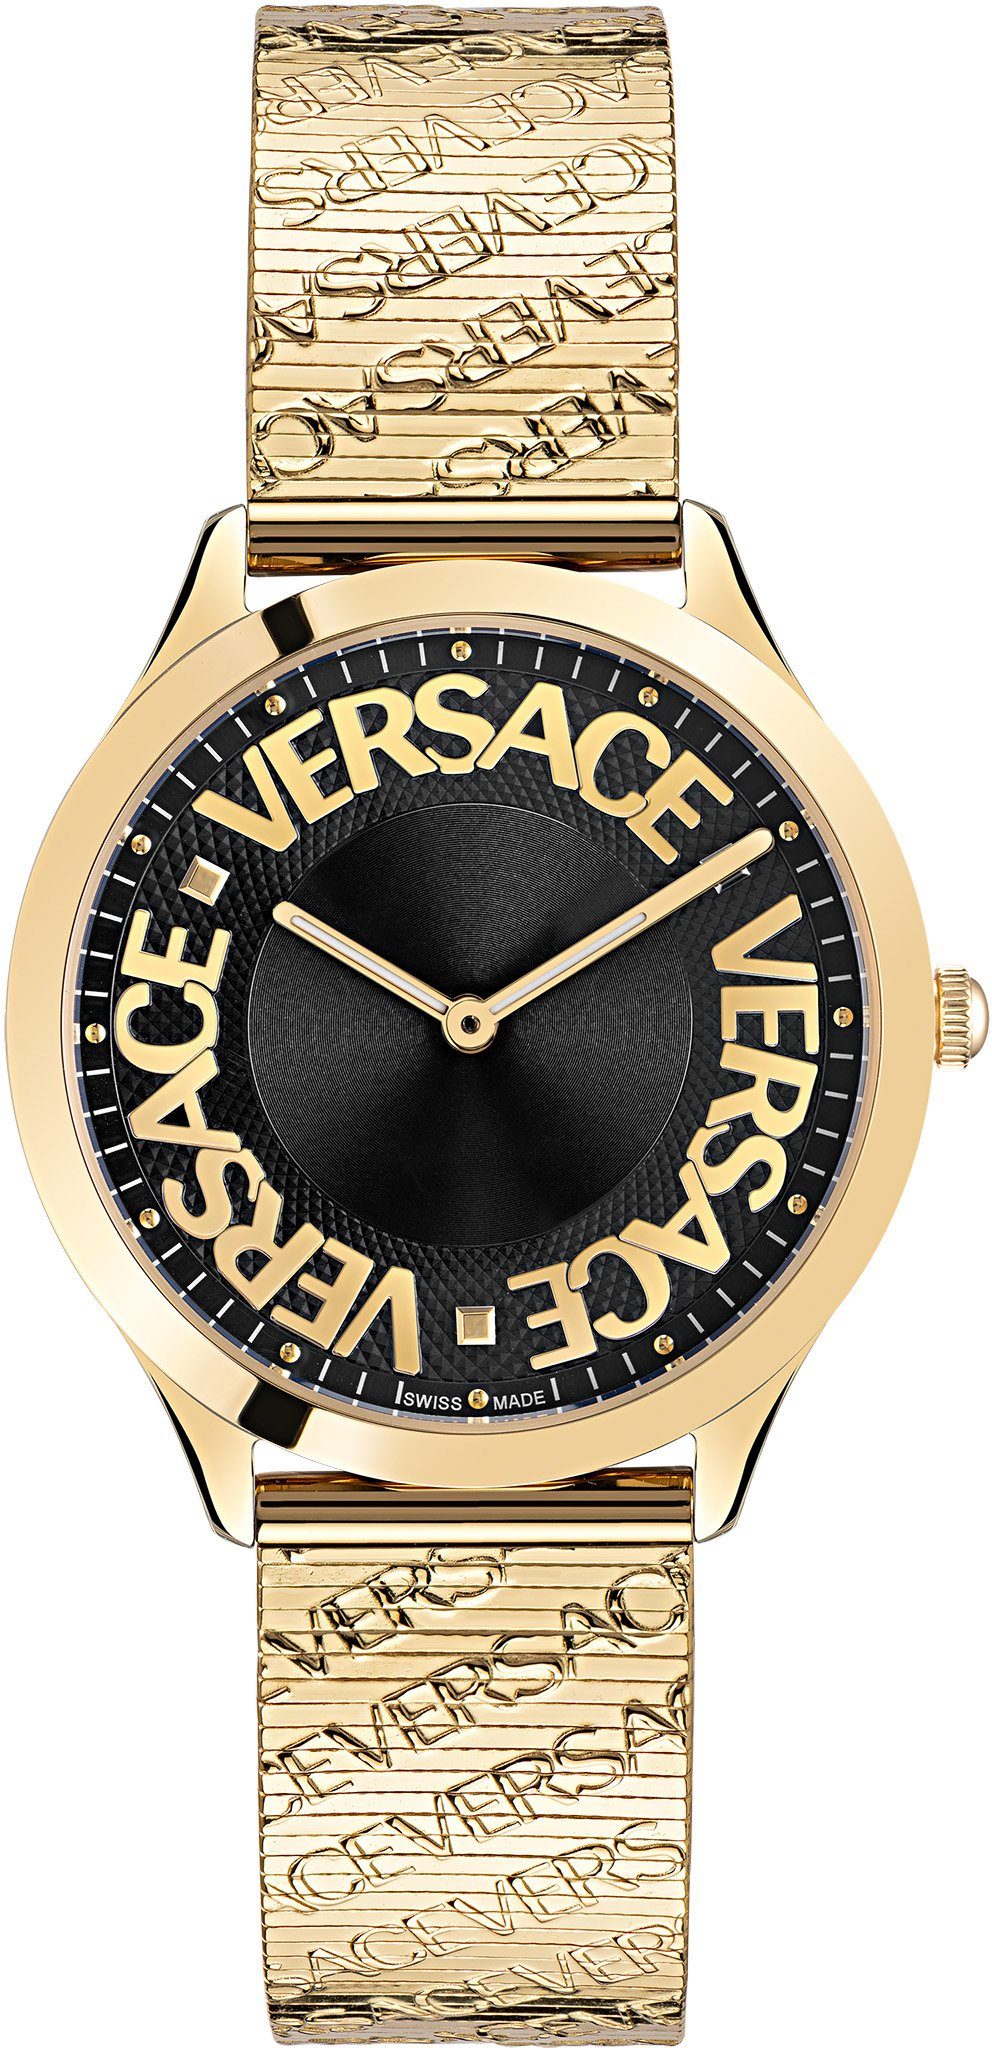 Versace Quarzuhr LOGO HALO, VE2O00522, Armbanduhr, Damenuhr, Saphirglas, Swiss Made